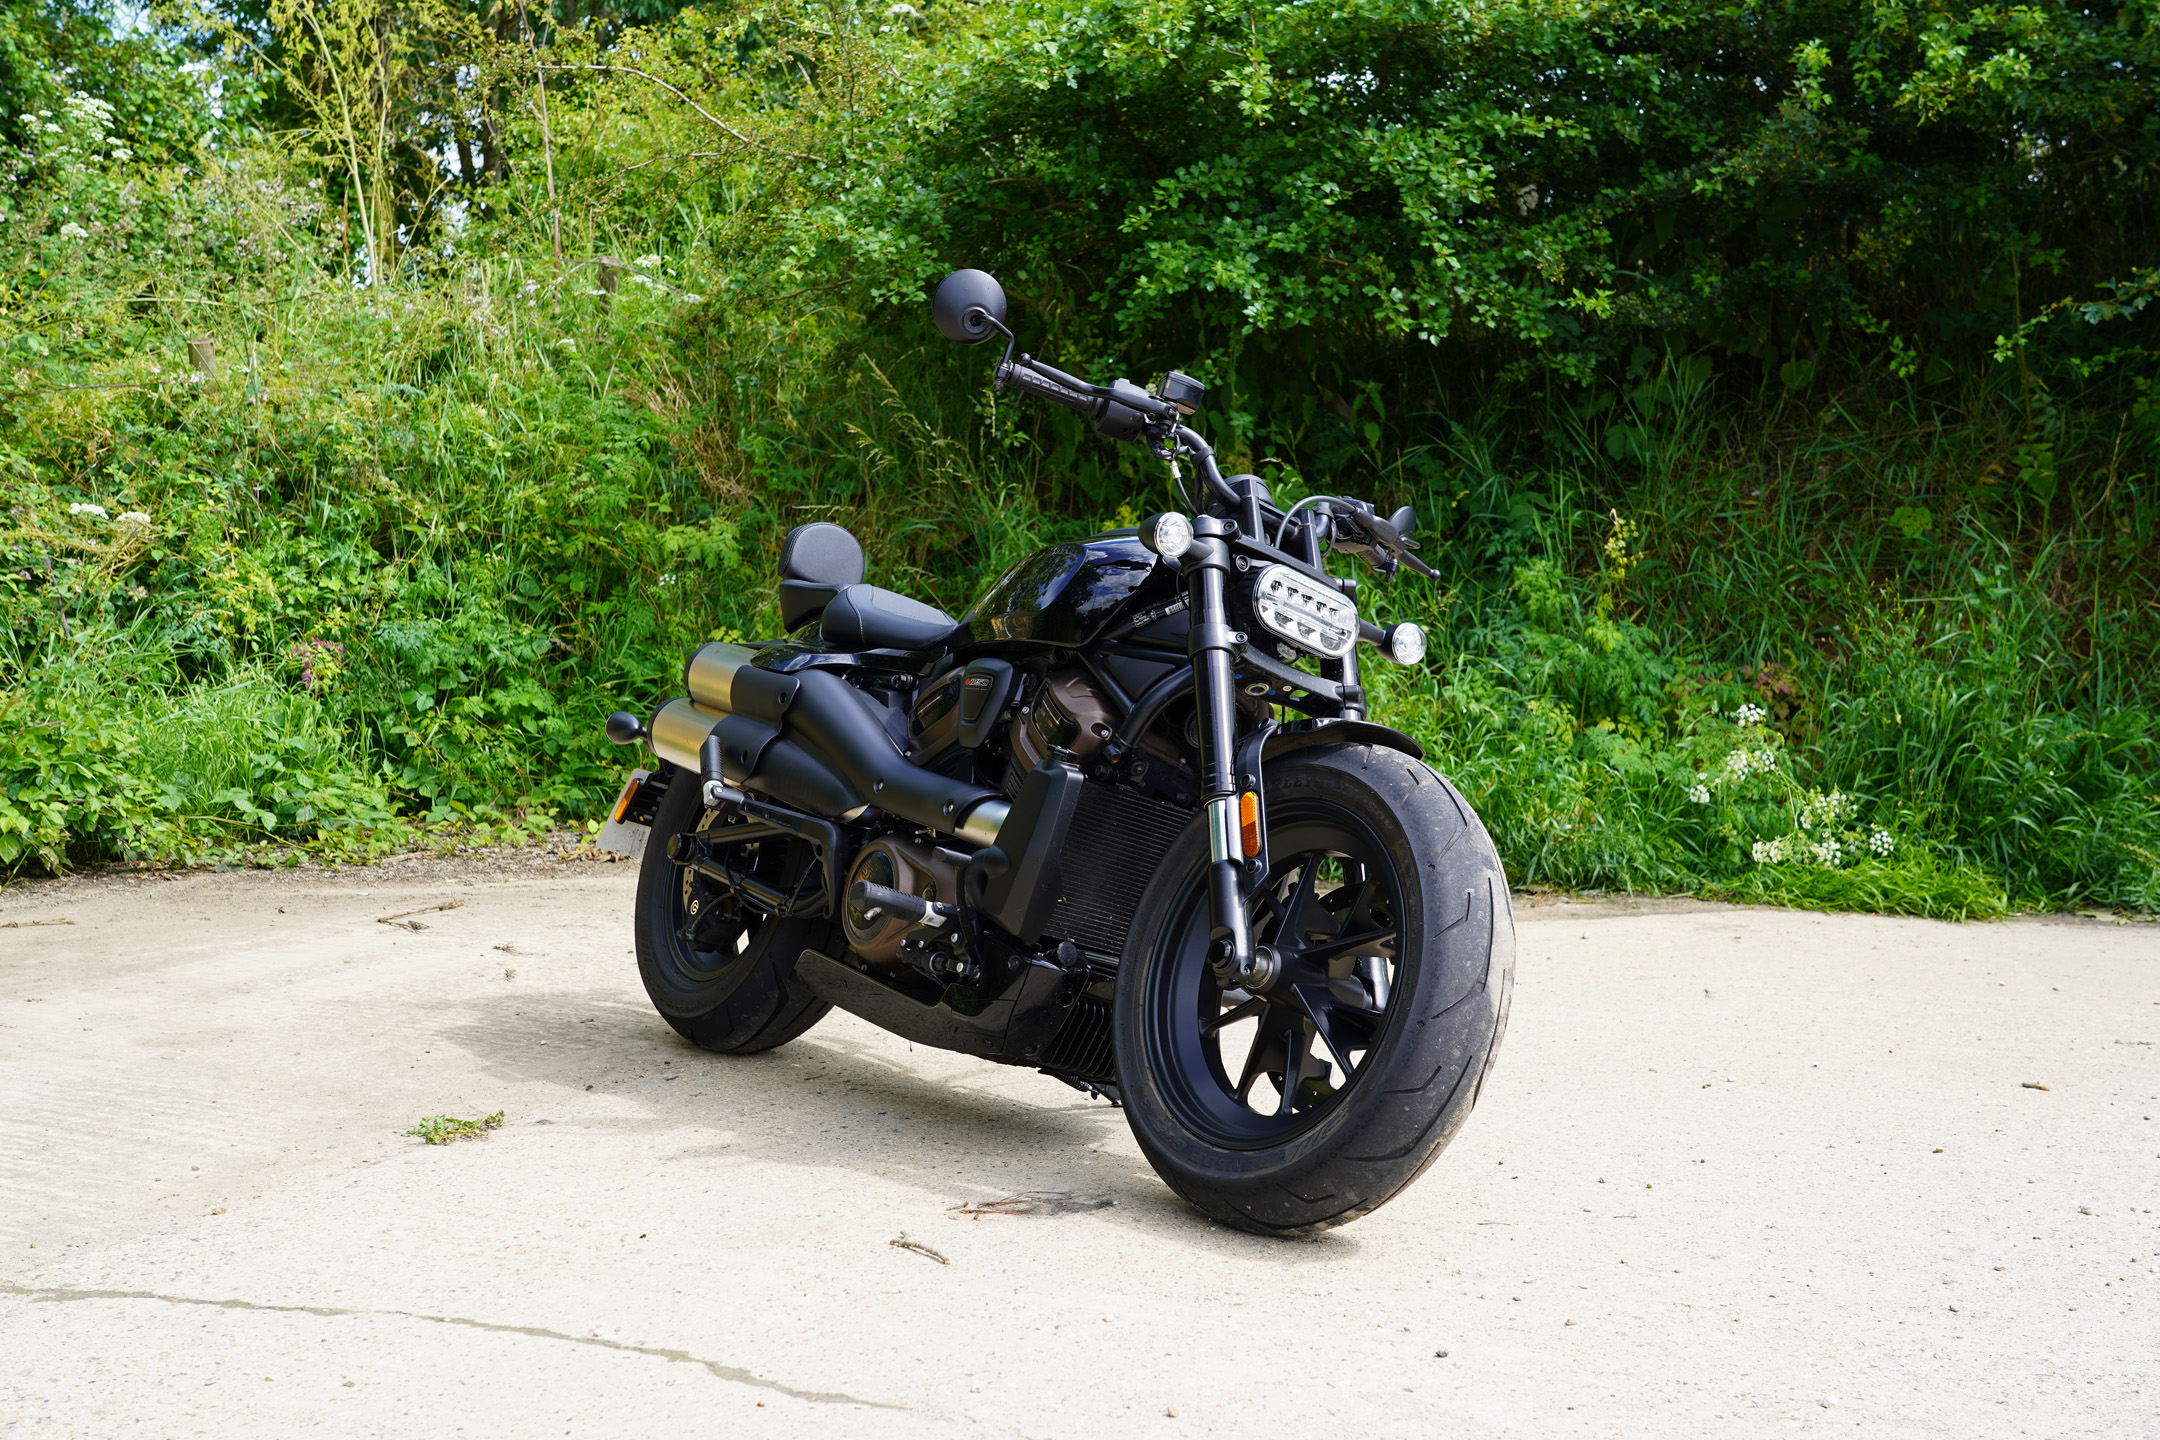 Harley-Davidson Sportster S reviewed on UK roads